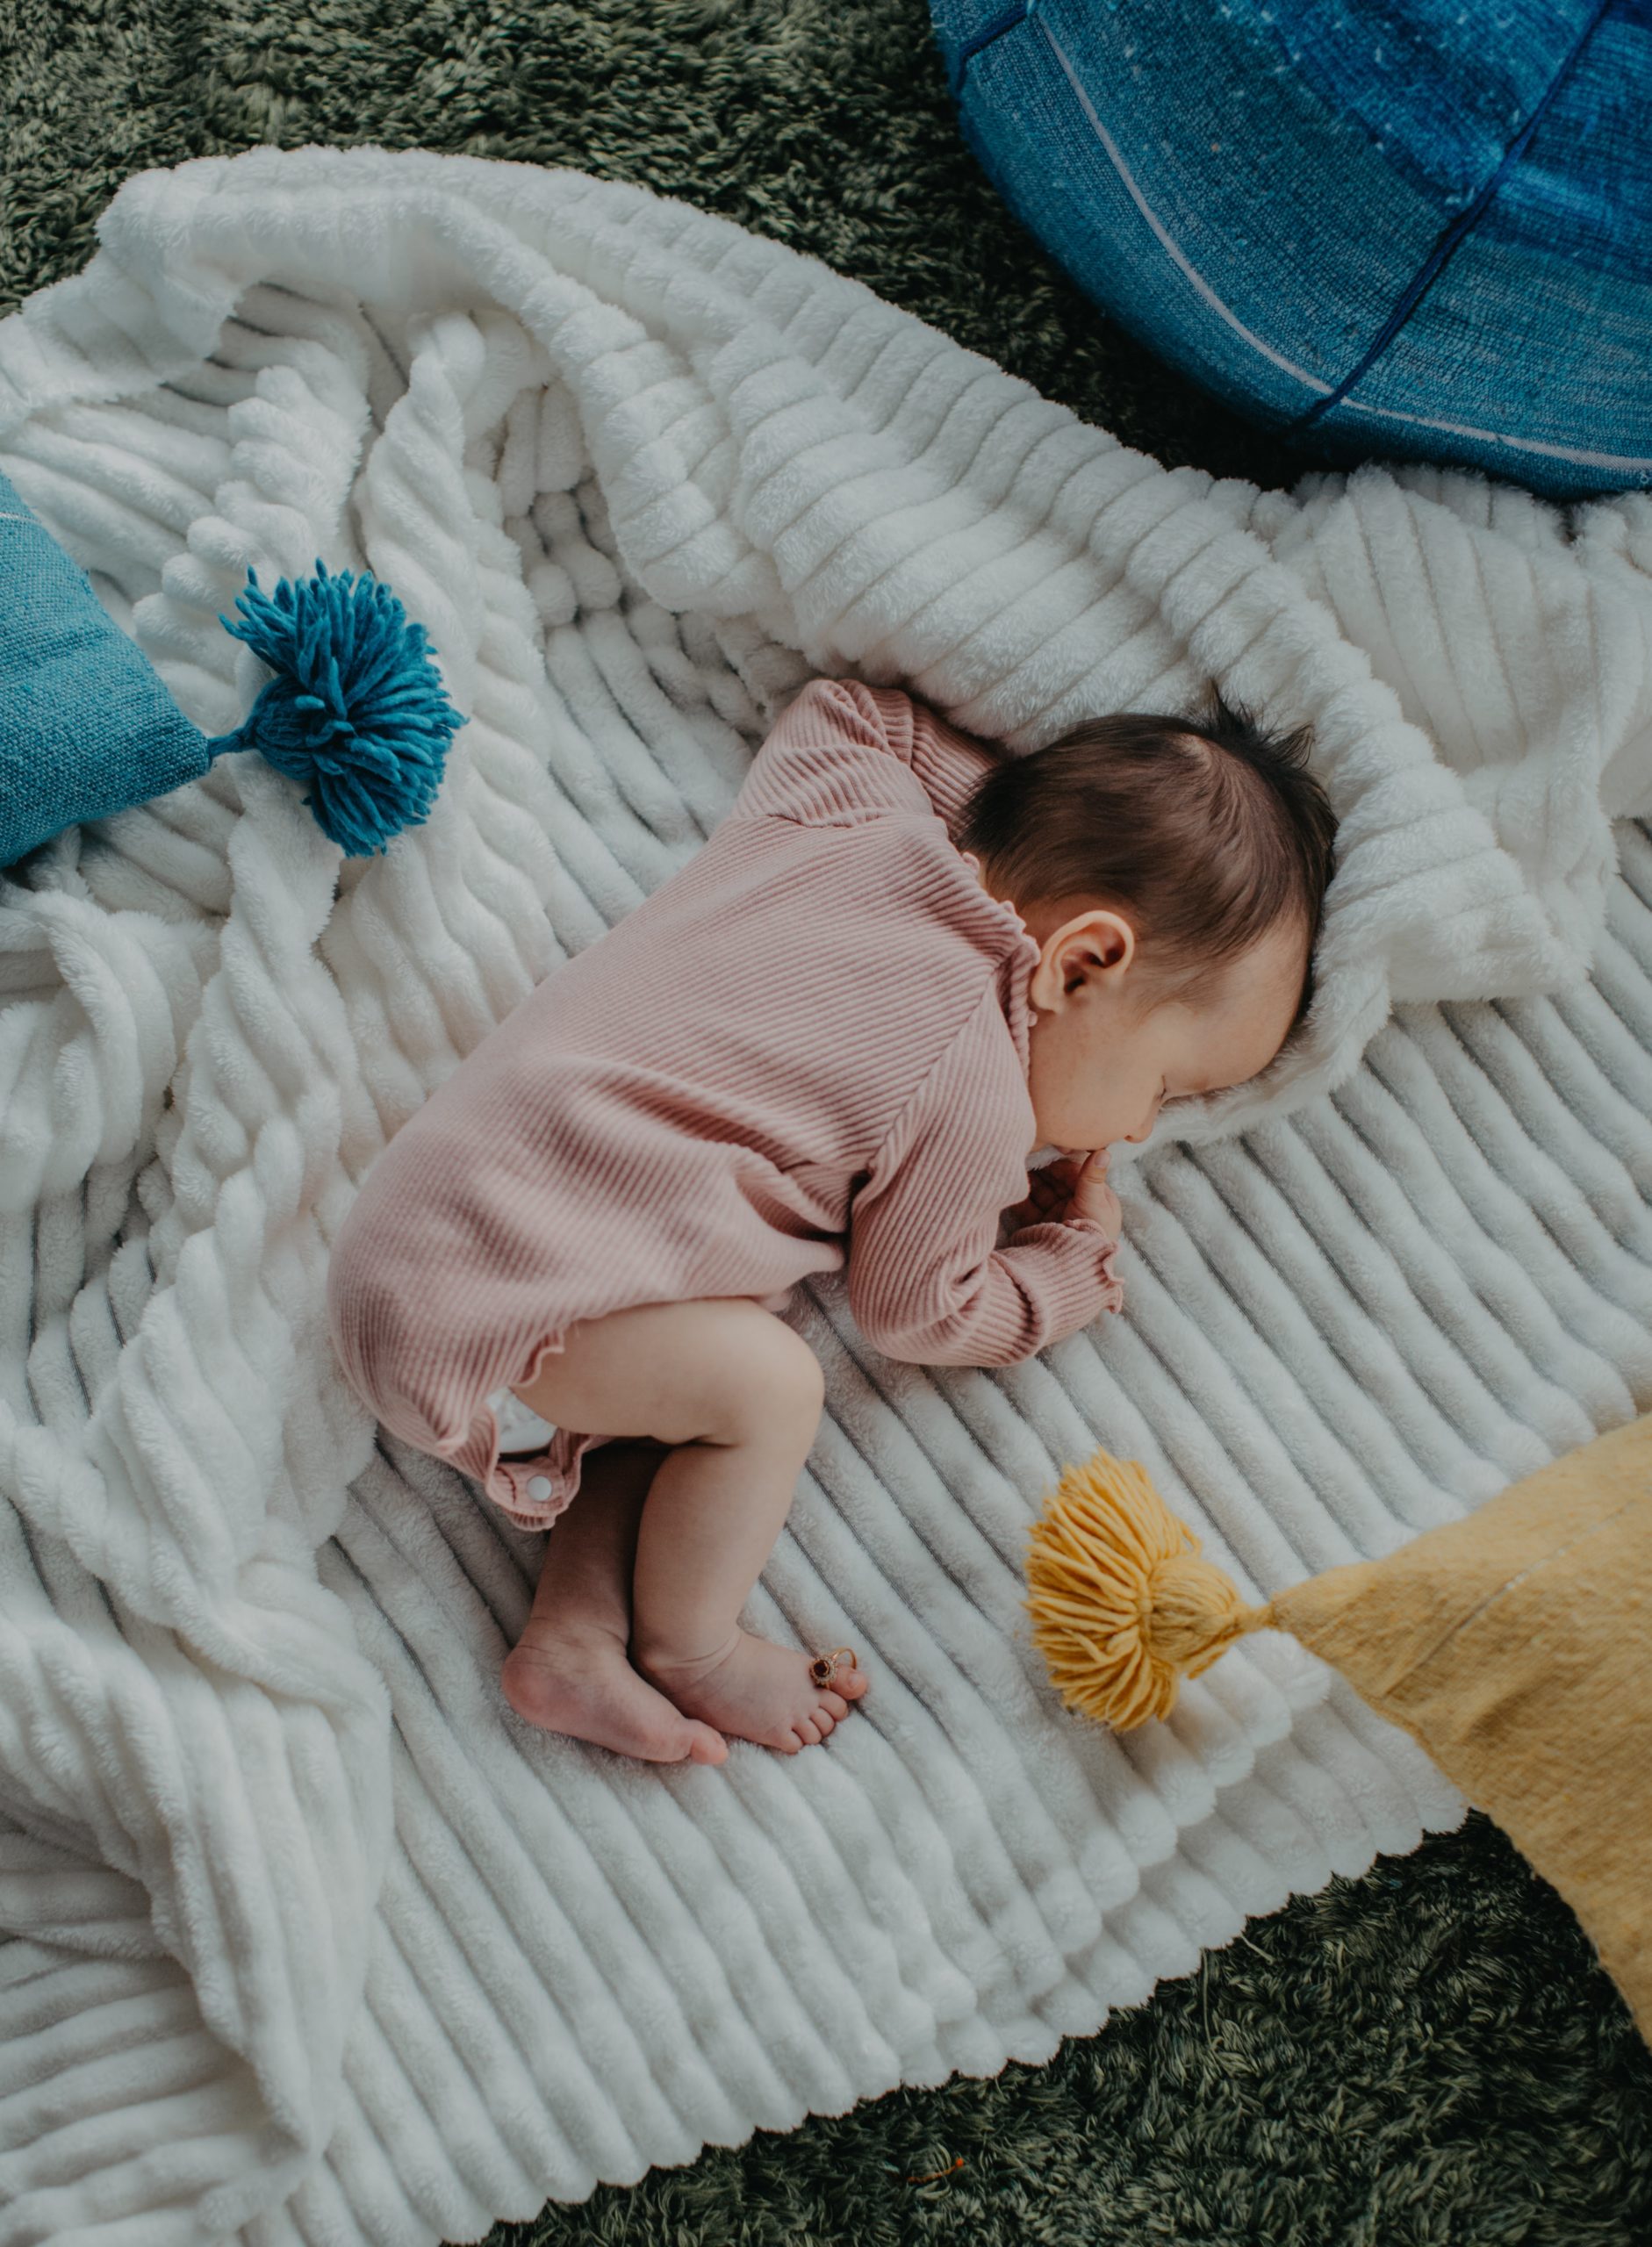 Lire la suite à propos de l’article Les bruits blancs & le sommeil de bébé